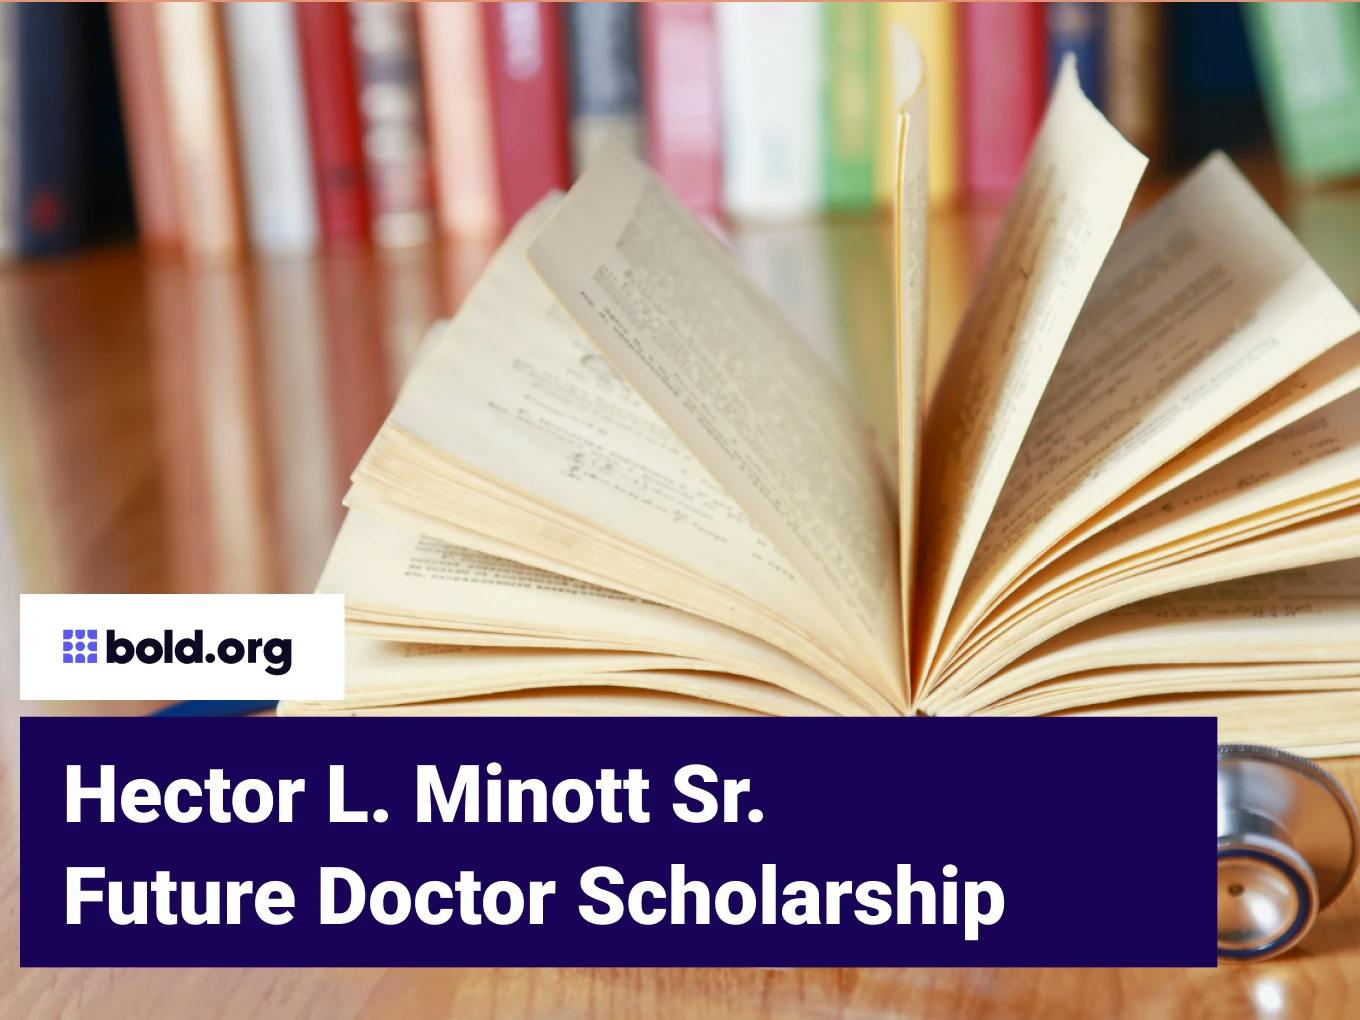 Hector L. Minott Sr. Future Doctor Scholarship